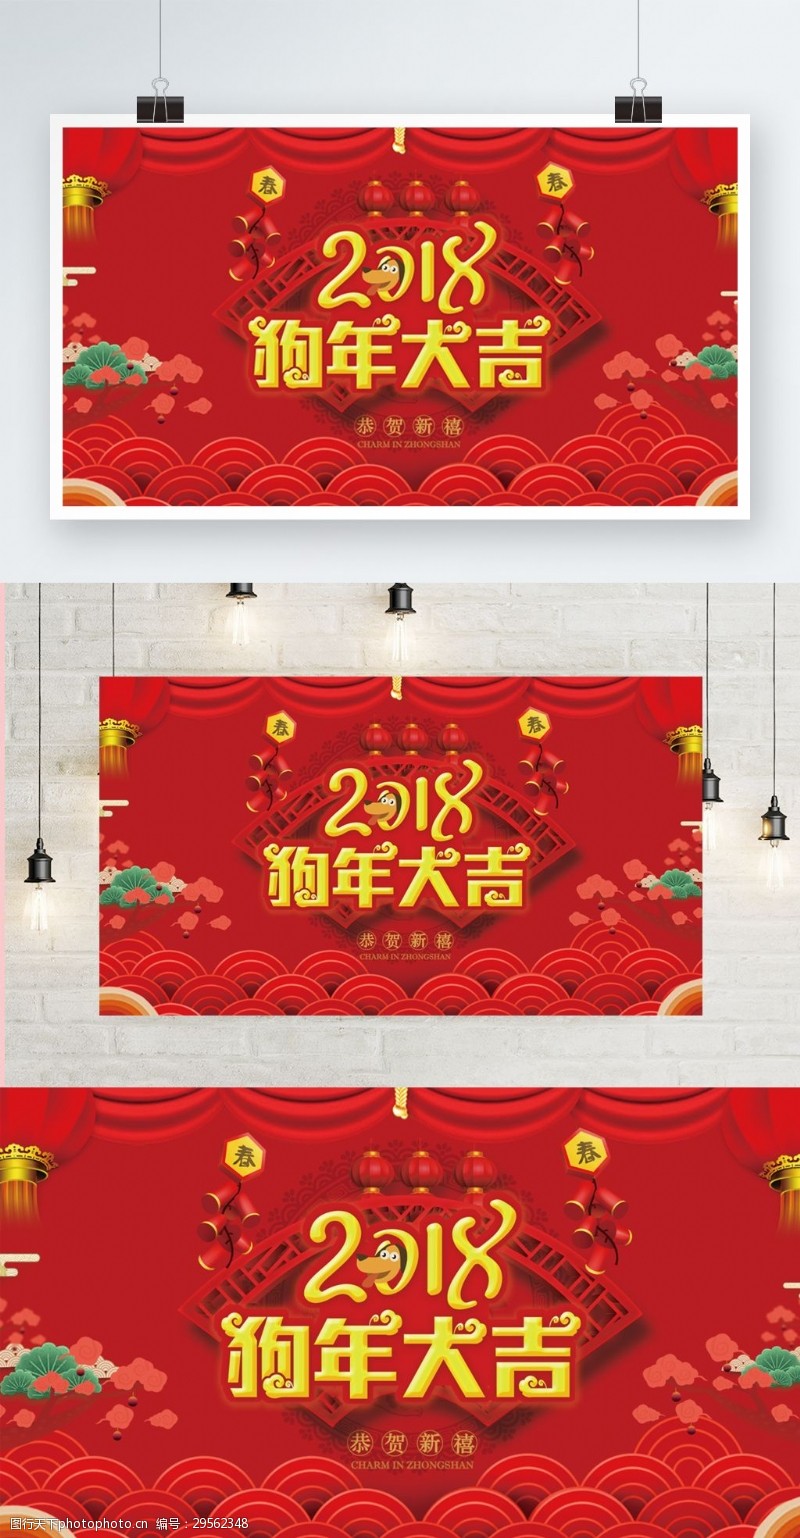 灯布红色喜庆2018春节展板